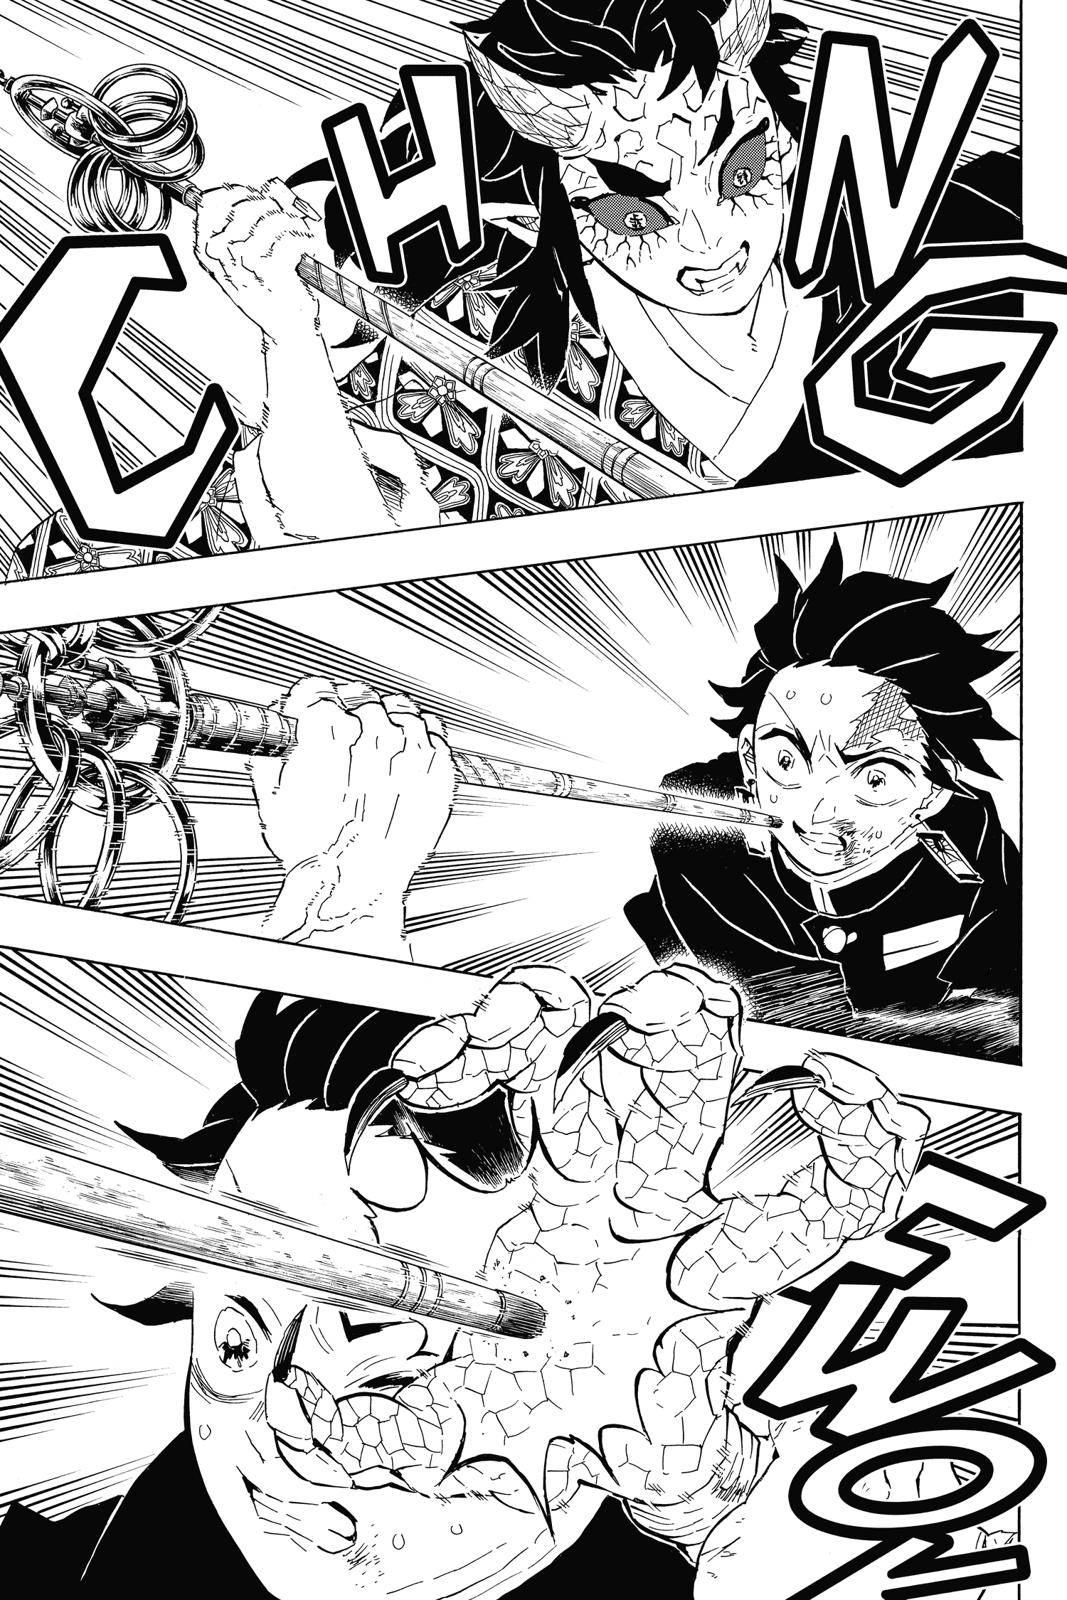 Demon Slayer Manga Manga Chapter - 110 - image 7